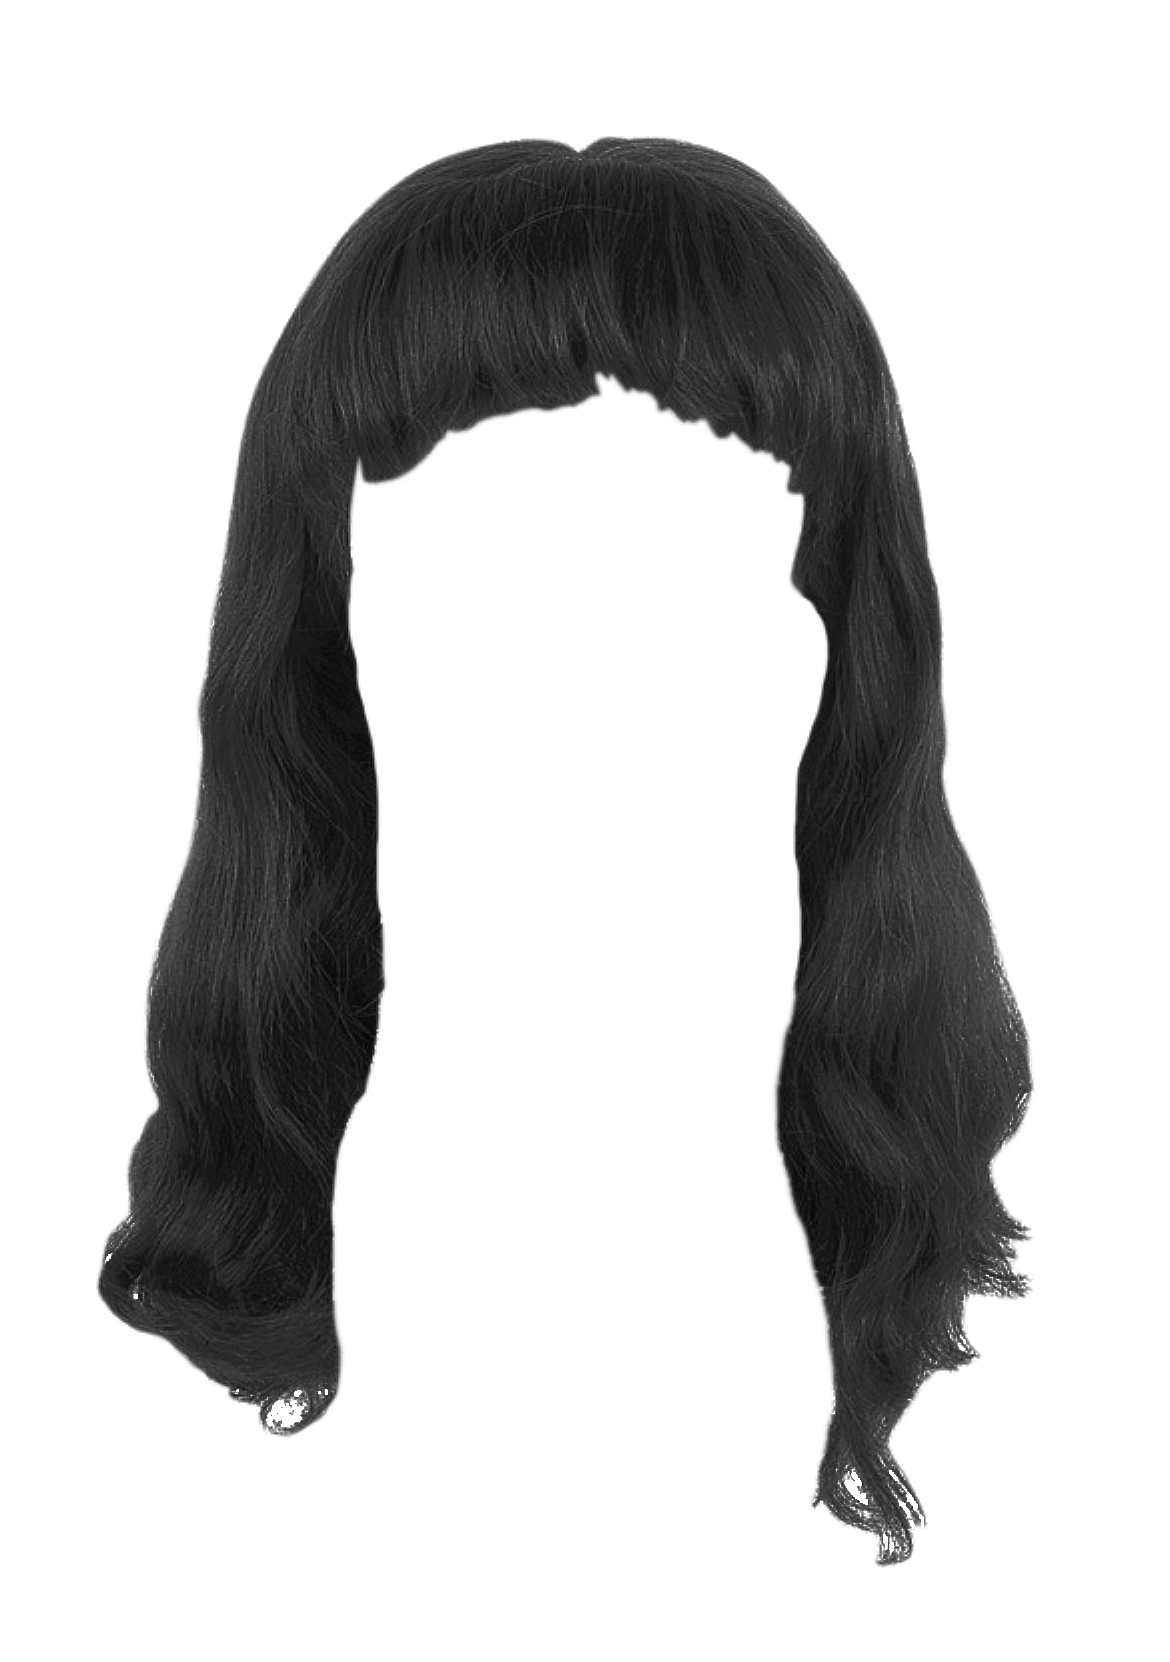 Black Women Hair Transparent Images